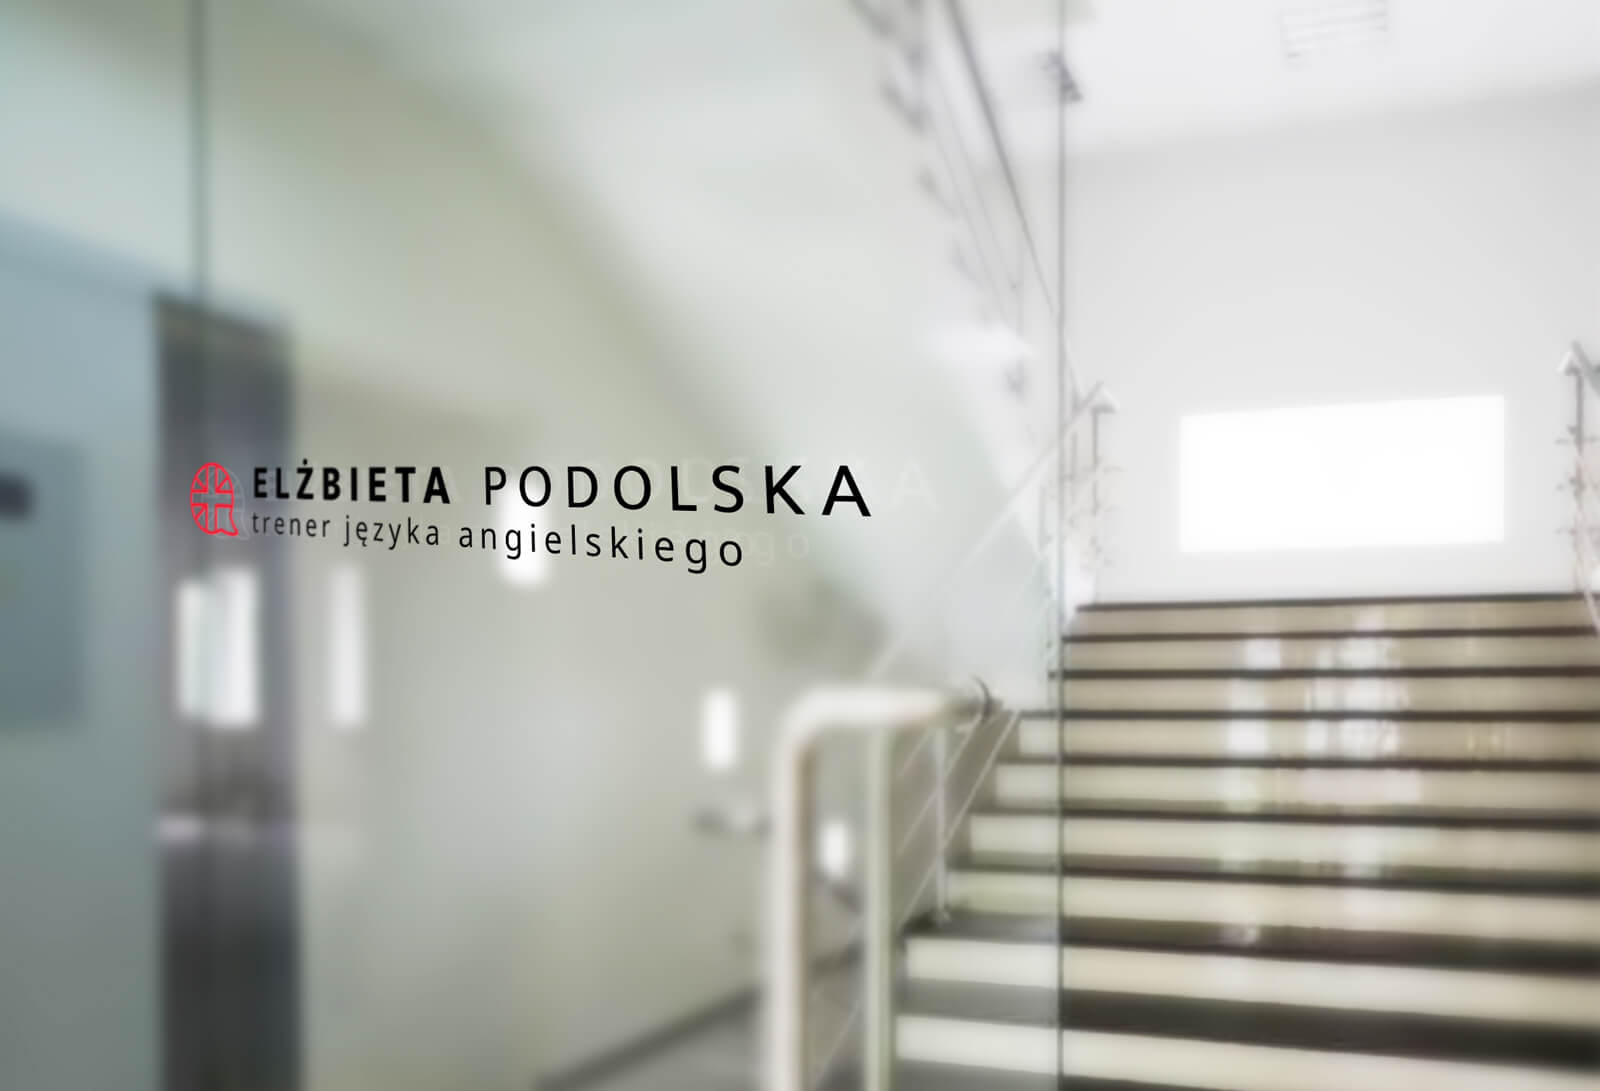 Elżbieta Podolska - wizualizacja nowego logo na szybie